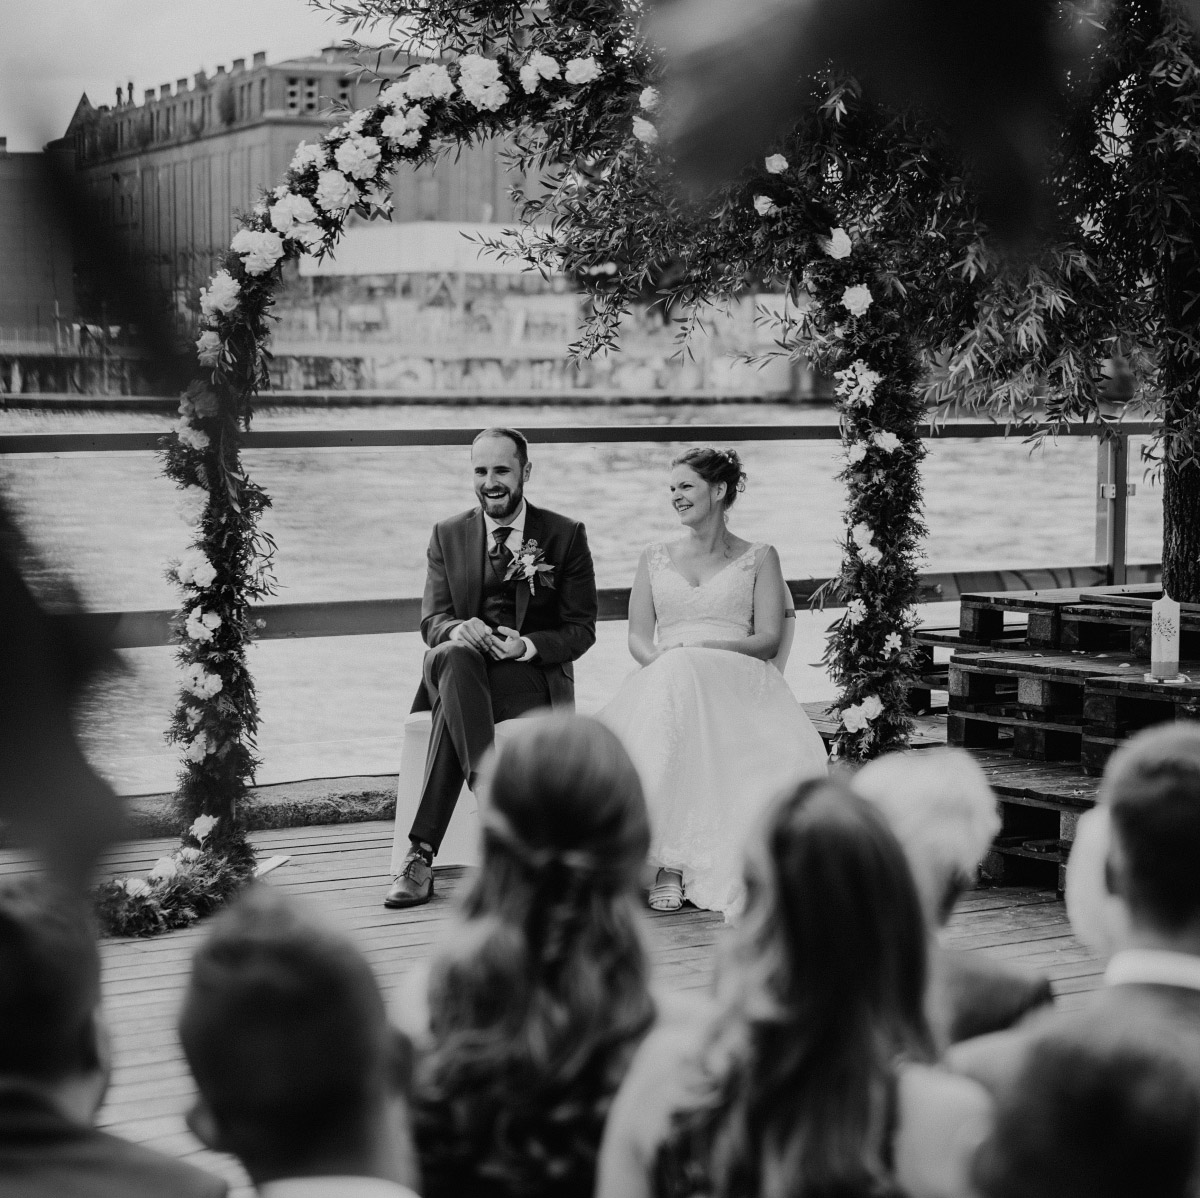 authentisches Hochzeitsfoto von Brautpaar unter Traubogen mit weißen Blumen auf Terrasse am Spreeufer - 89 Lighthouse White Spreelounge Berlin Hochzeitsfotograf © www.hochzeitslicht.de